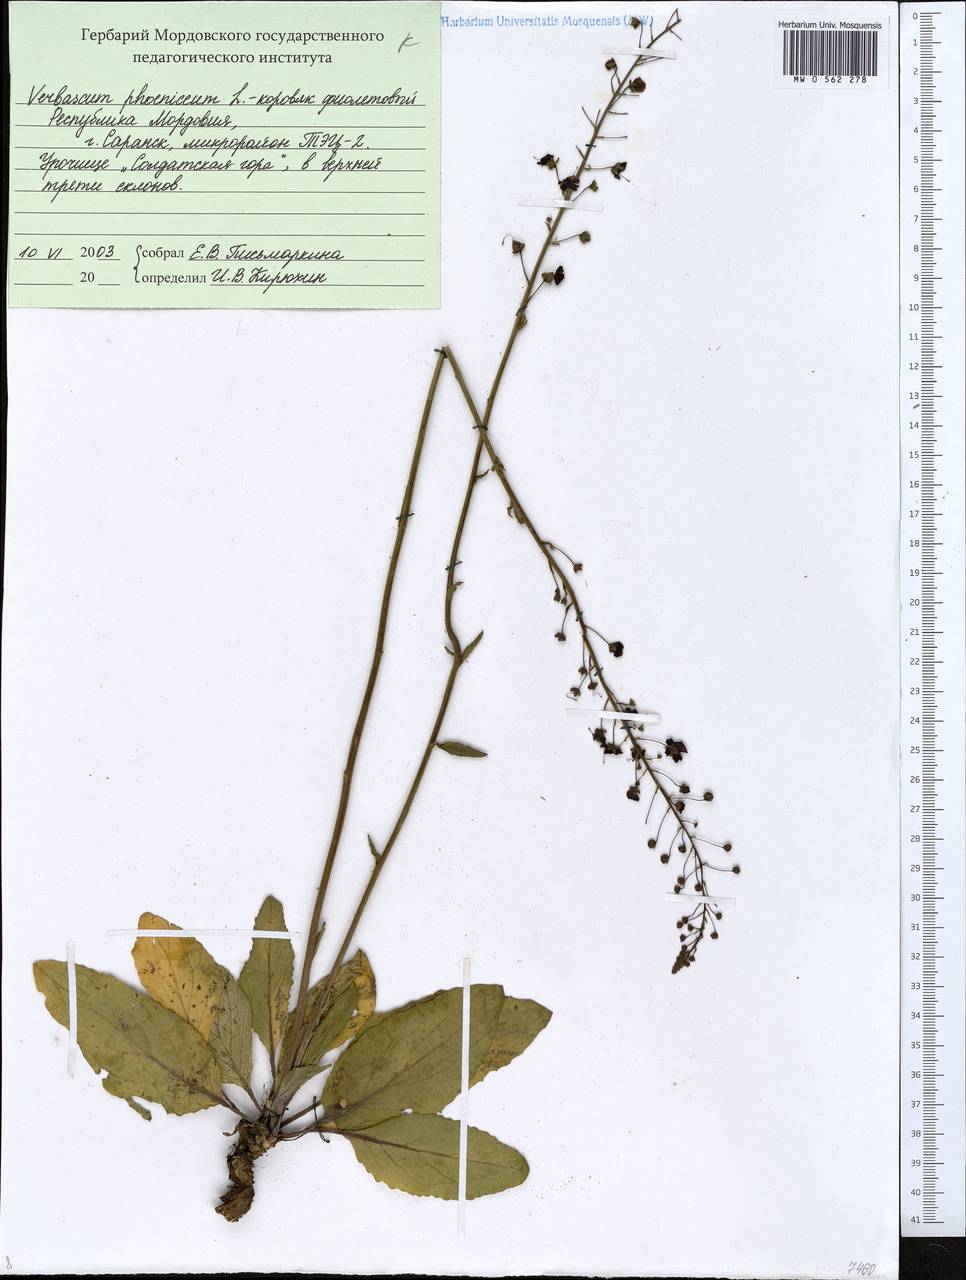 Verbascum phoeniceum L., Eastern Europe, Middle Volga region (E8) (Russia)